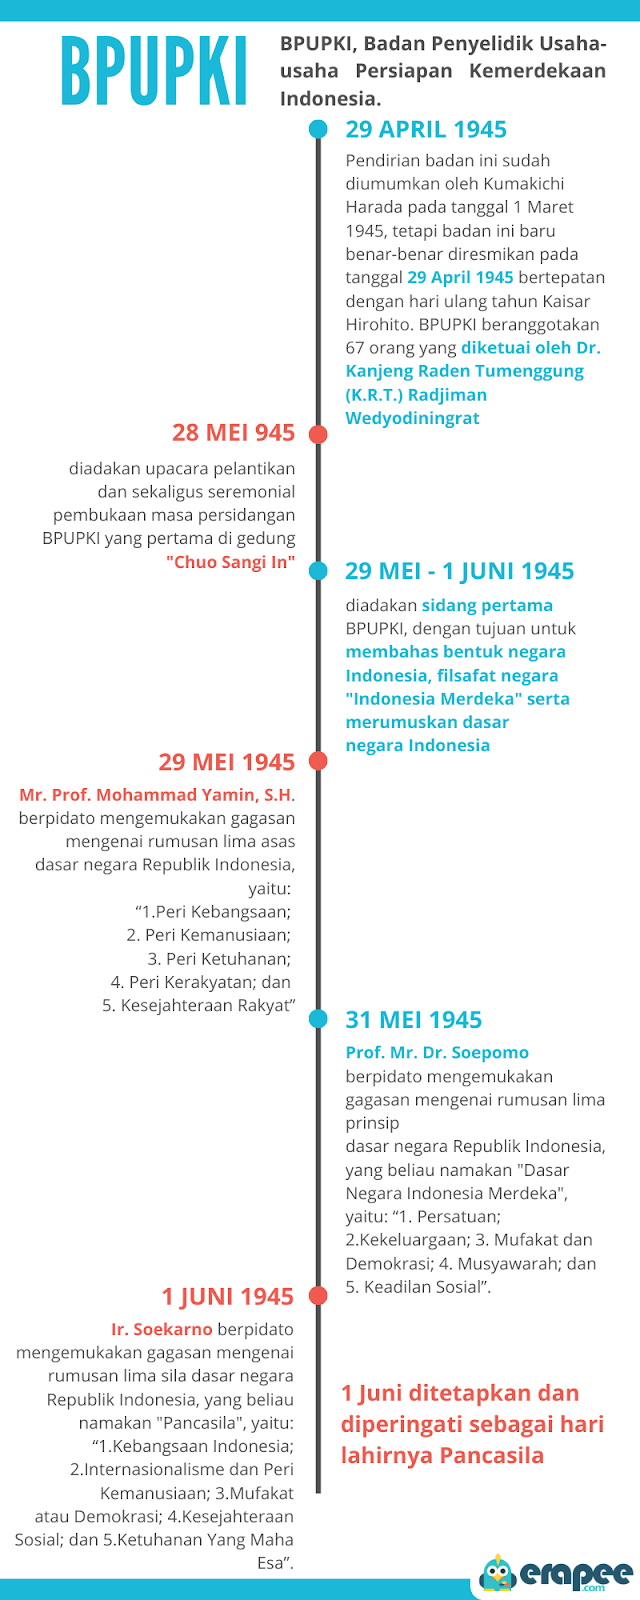 Dr soepomo mengemukakan lima dasar negara indonesia kecuali